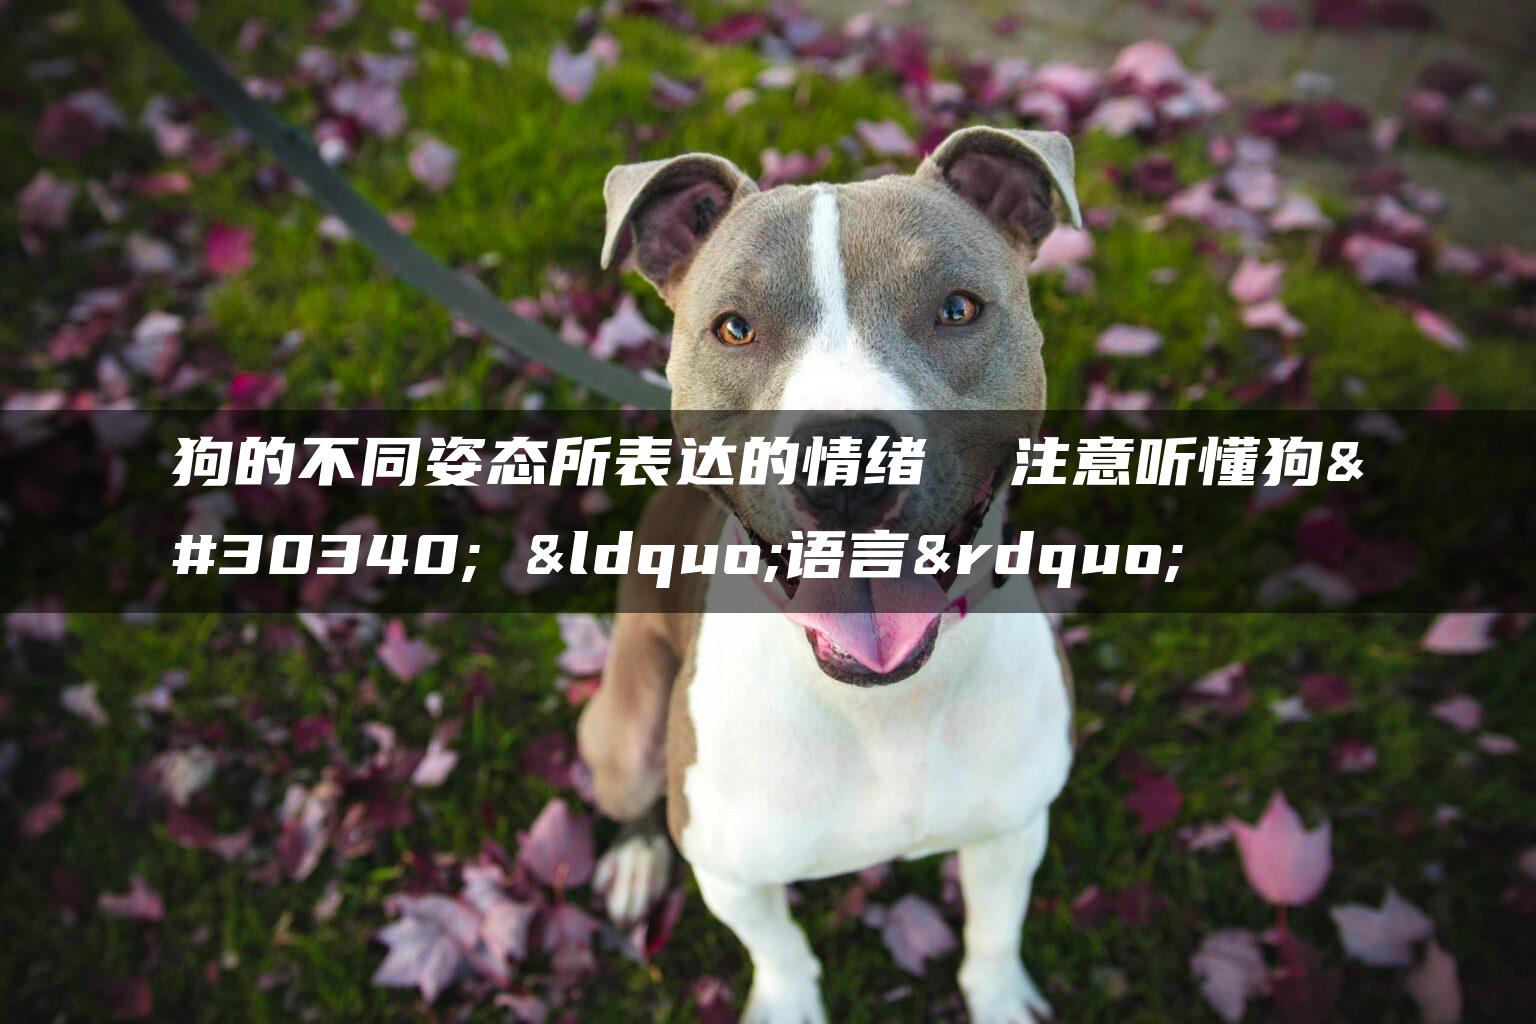 狗的不同姿态所表达的情绪  注意听懂狗的 “语言”